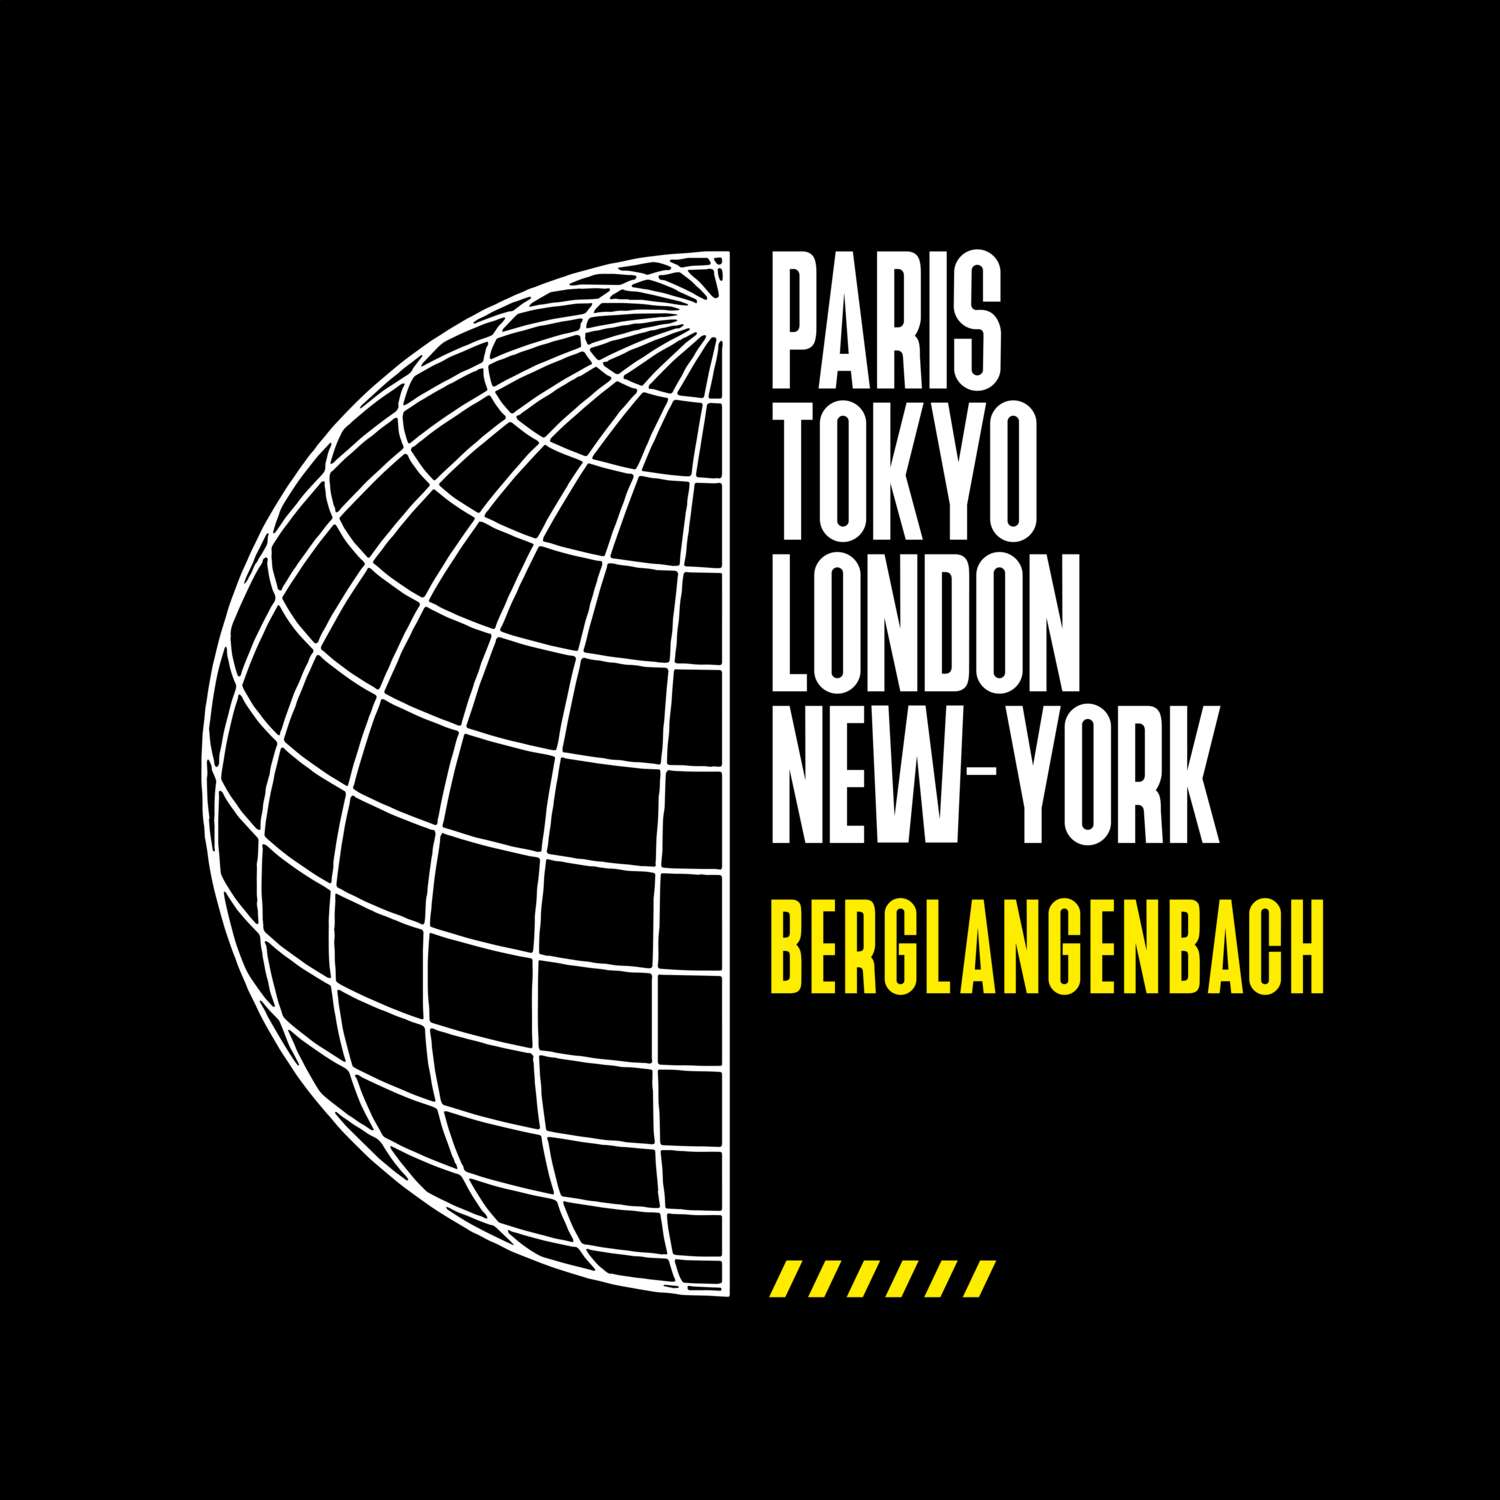 Berglangenbach T-Shirt »Paris Tokyo London«